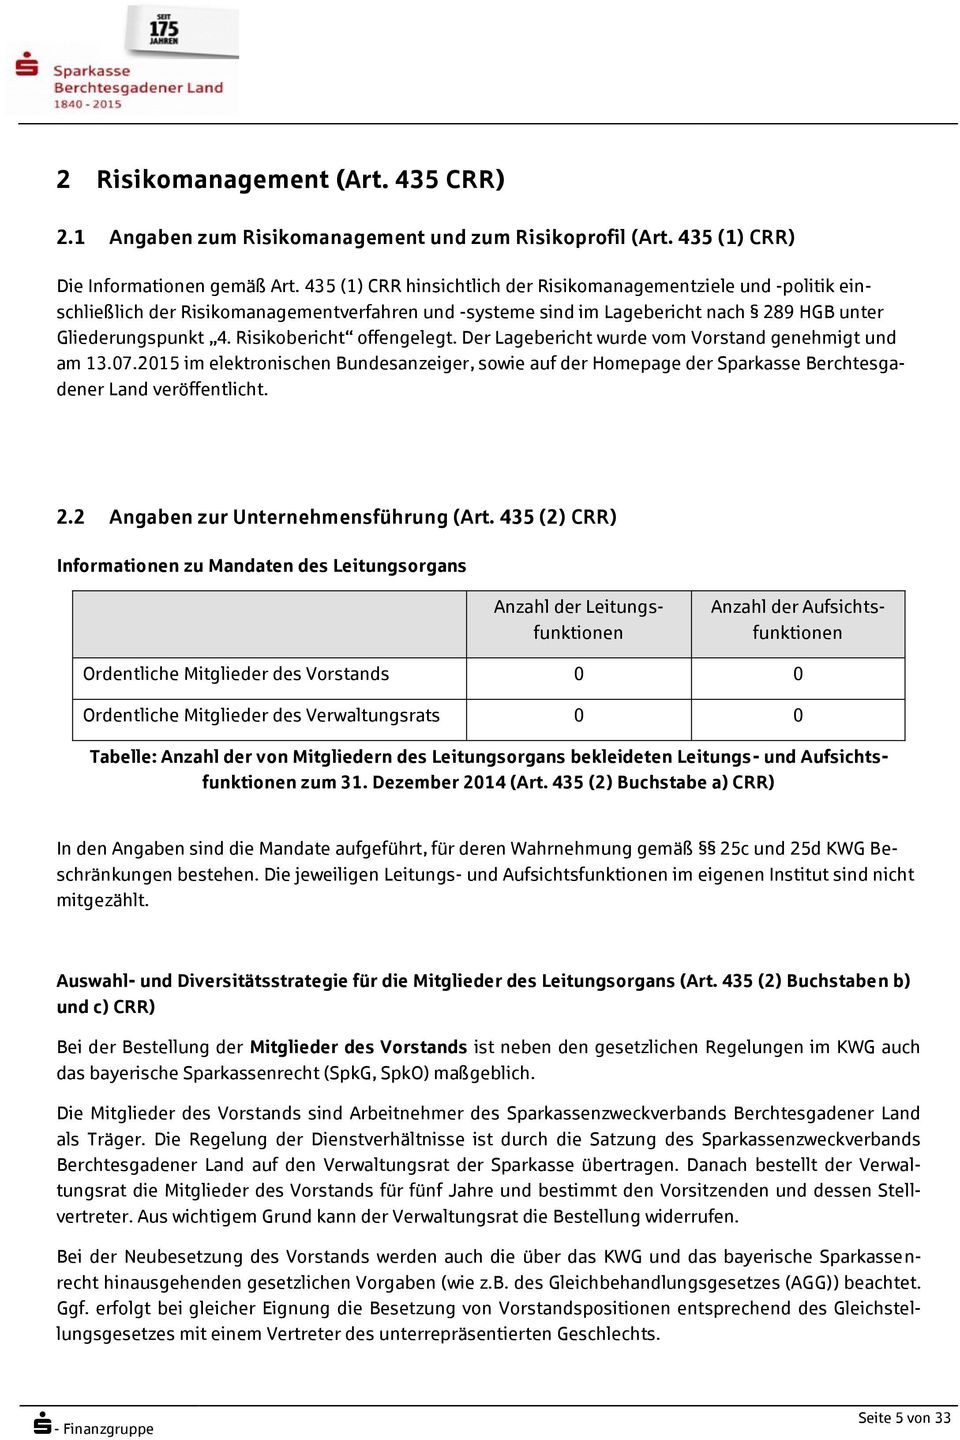 Risikobericht offengelegt. Der Lagebericht wurde vom Vorstand genehmigt und am 13.07.2015 im elektronischen Bundesanzeiger, sowie auf der Homepage der Sparkasse Berchtesgadener Land veröffentlicht. 2.